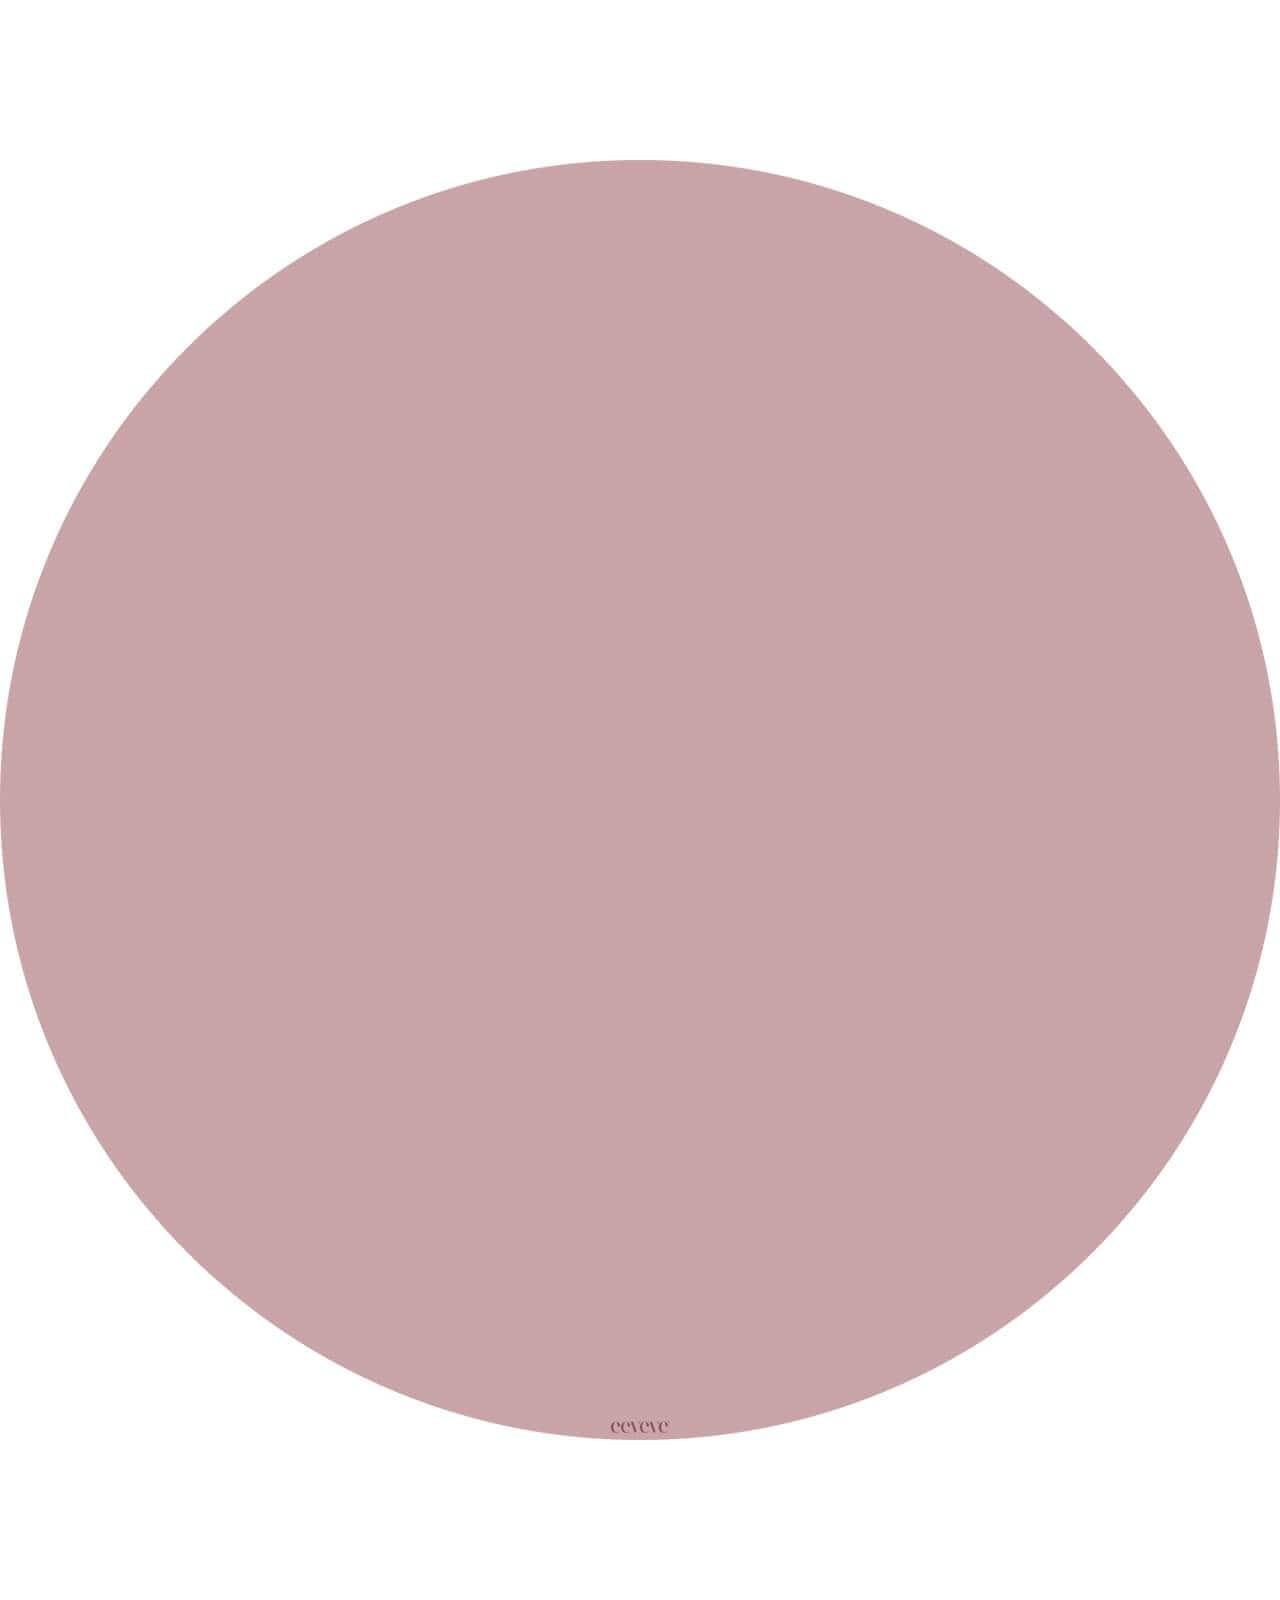 Eeveve - Ronde Vloermat Old Pink